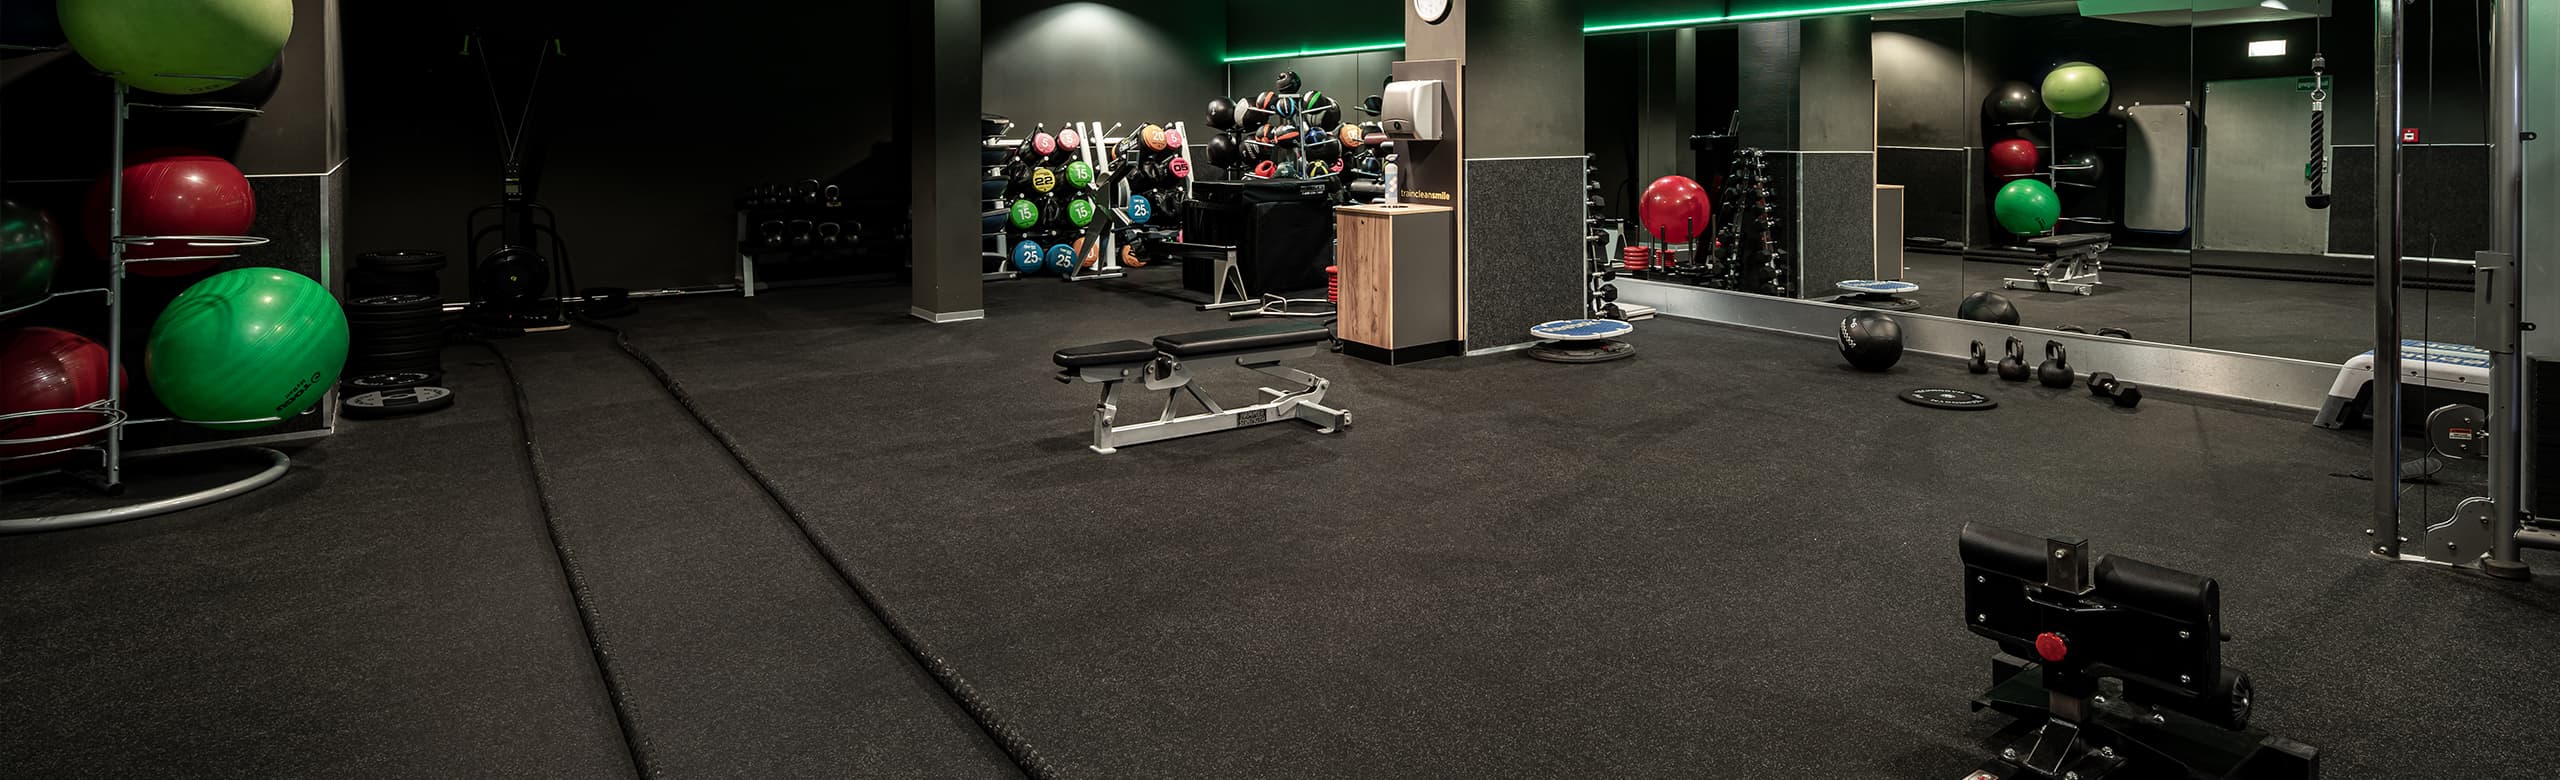 Unser Fitnessboden in einem Fitnessstudio mit Freihantelbereich